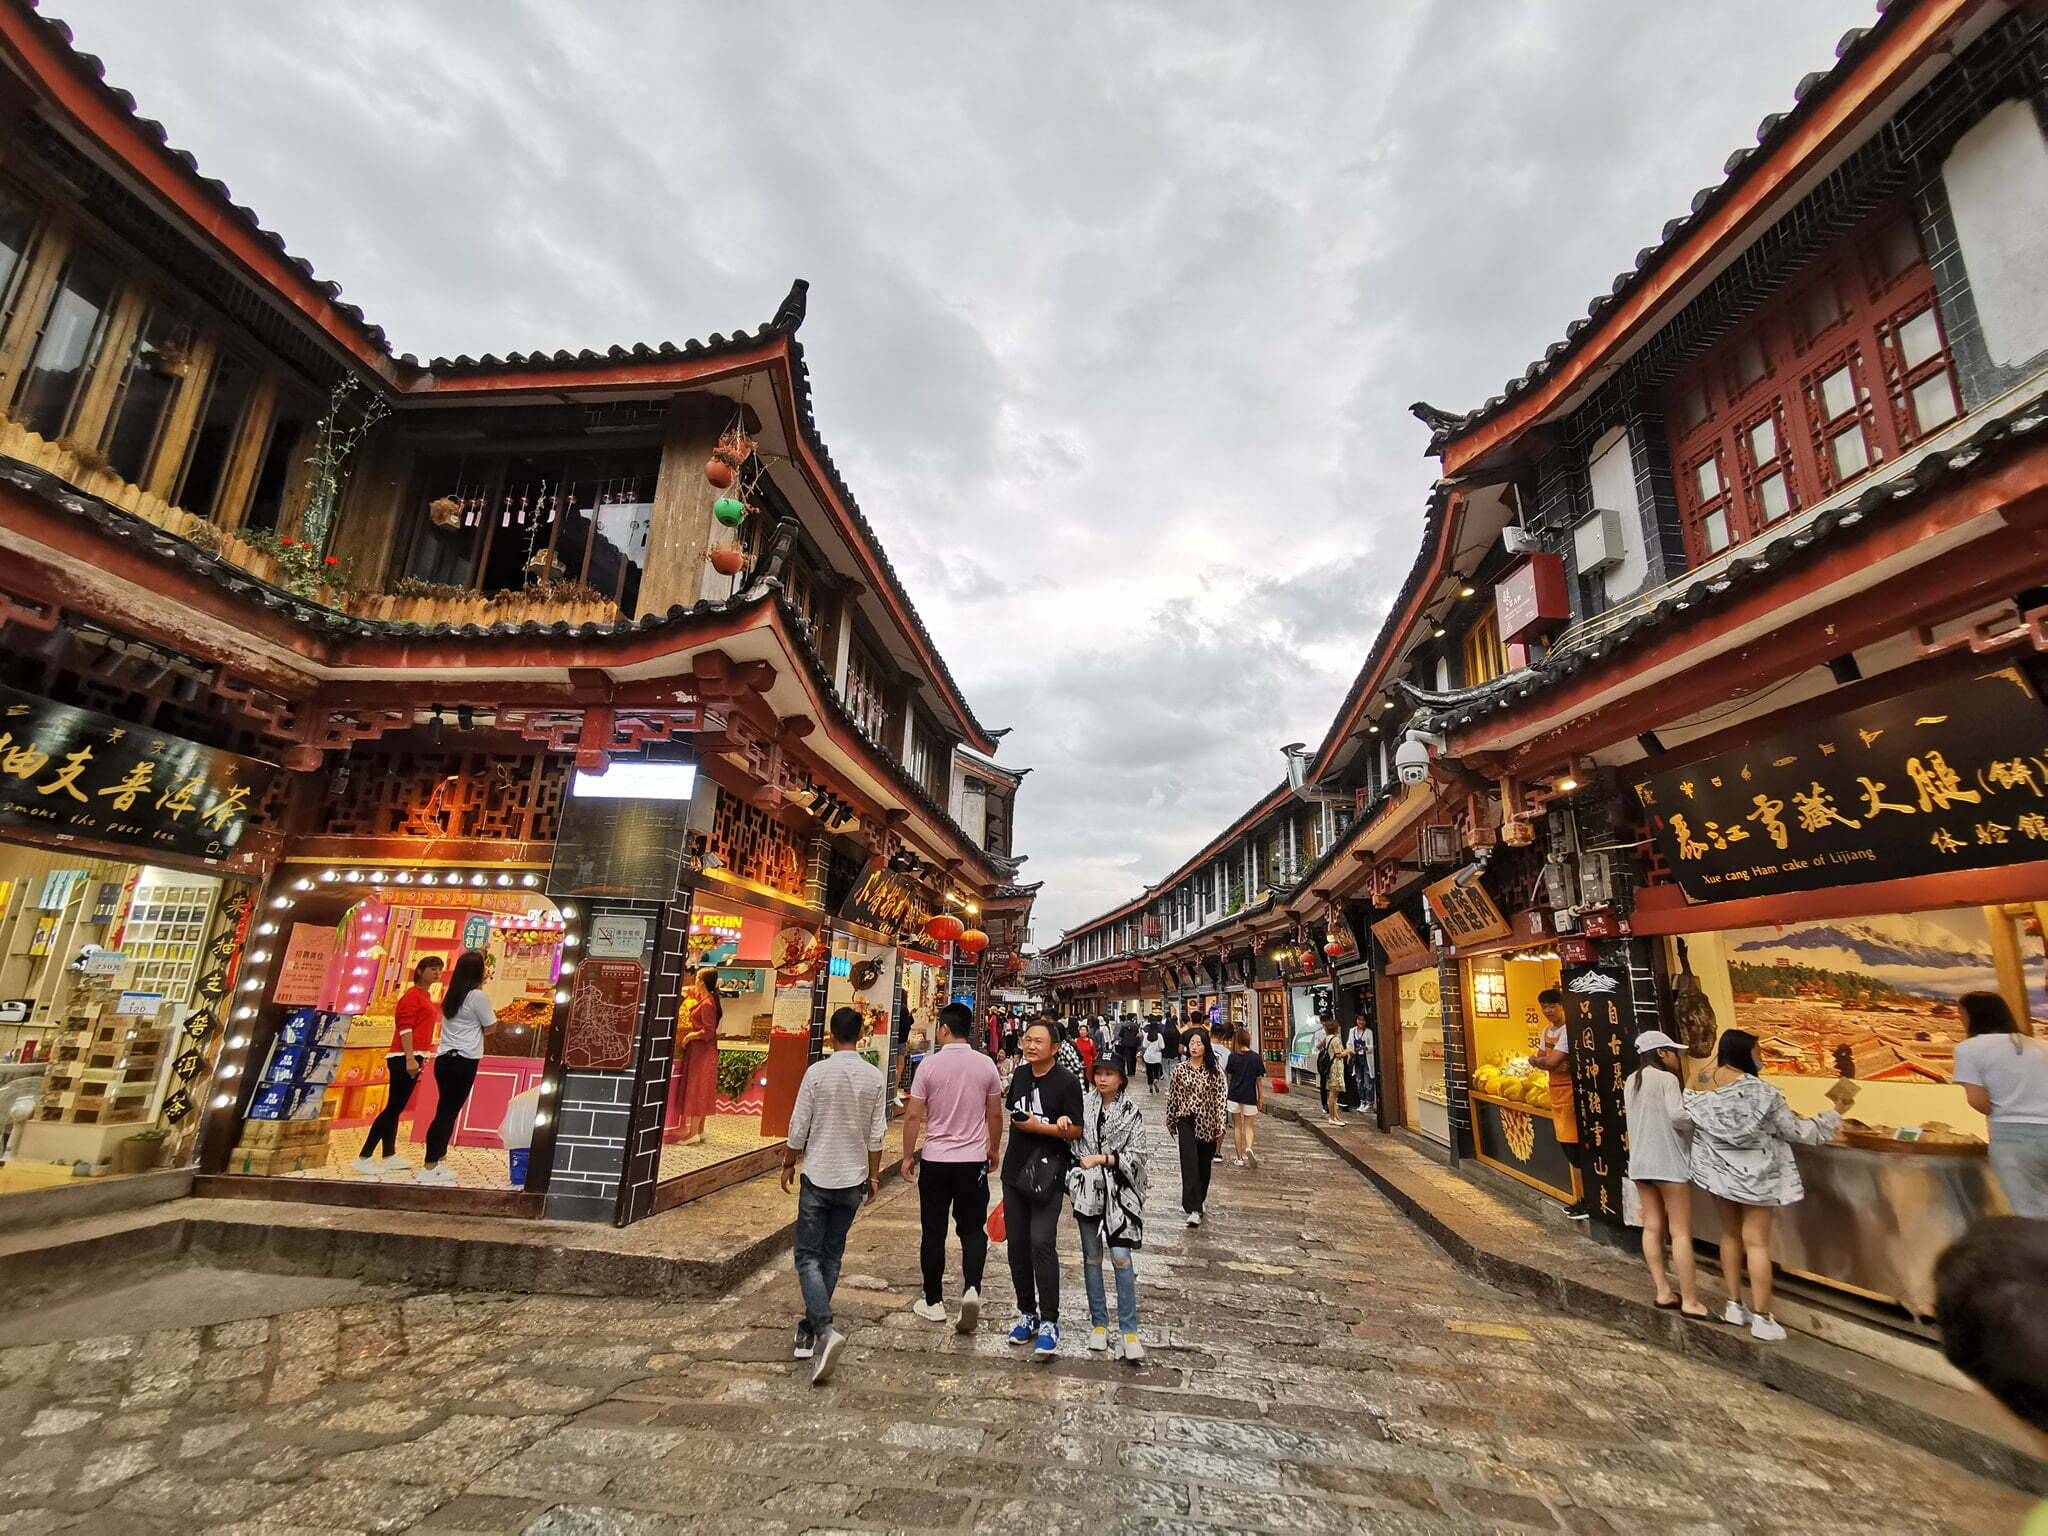 เมืองเก่าลี่เจียง (Lijiang Old Town)